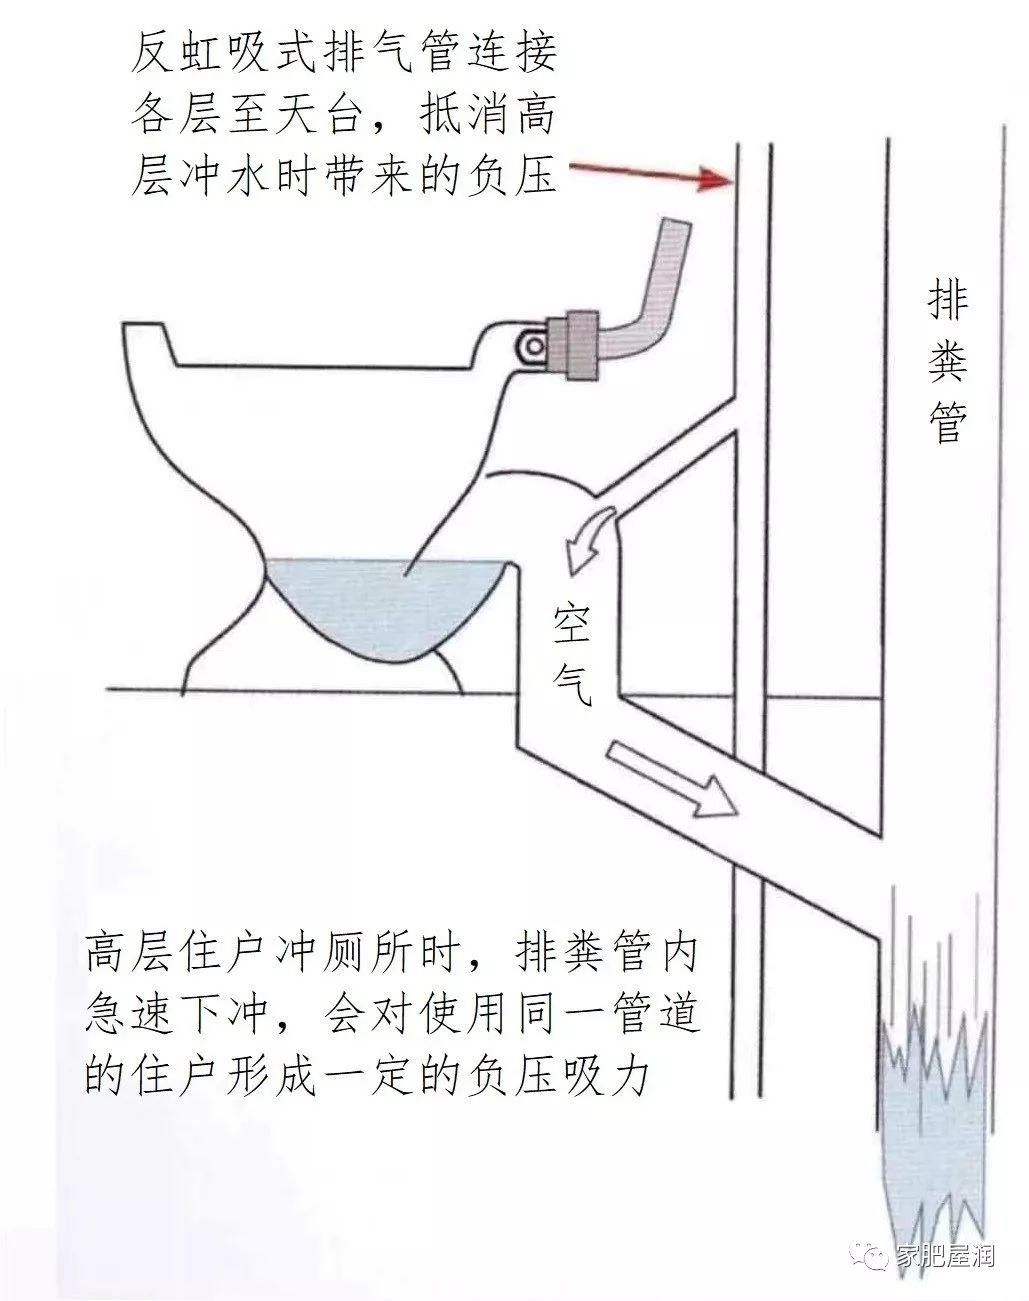 卫生间排粪管和排气管的原理图